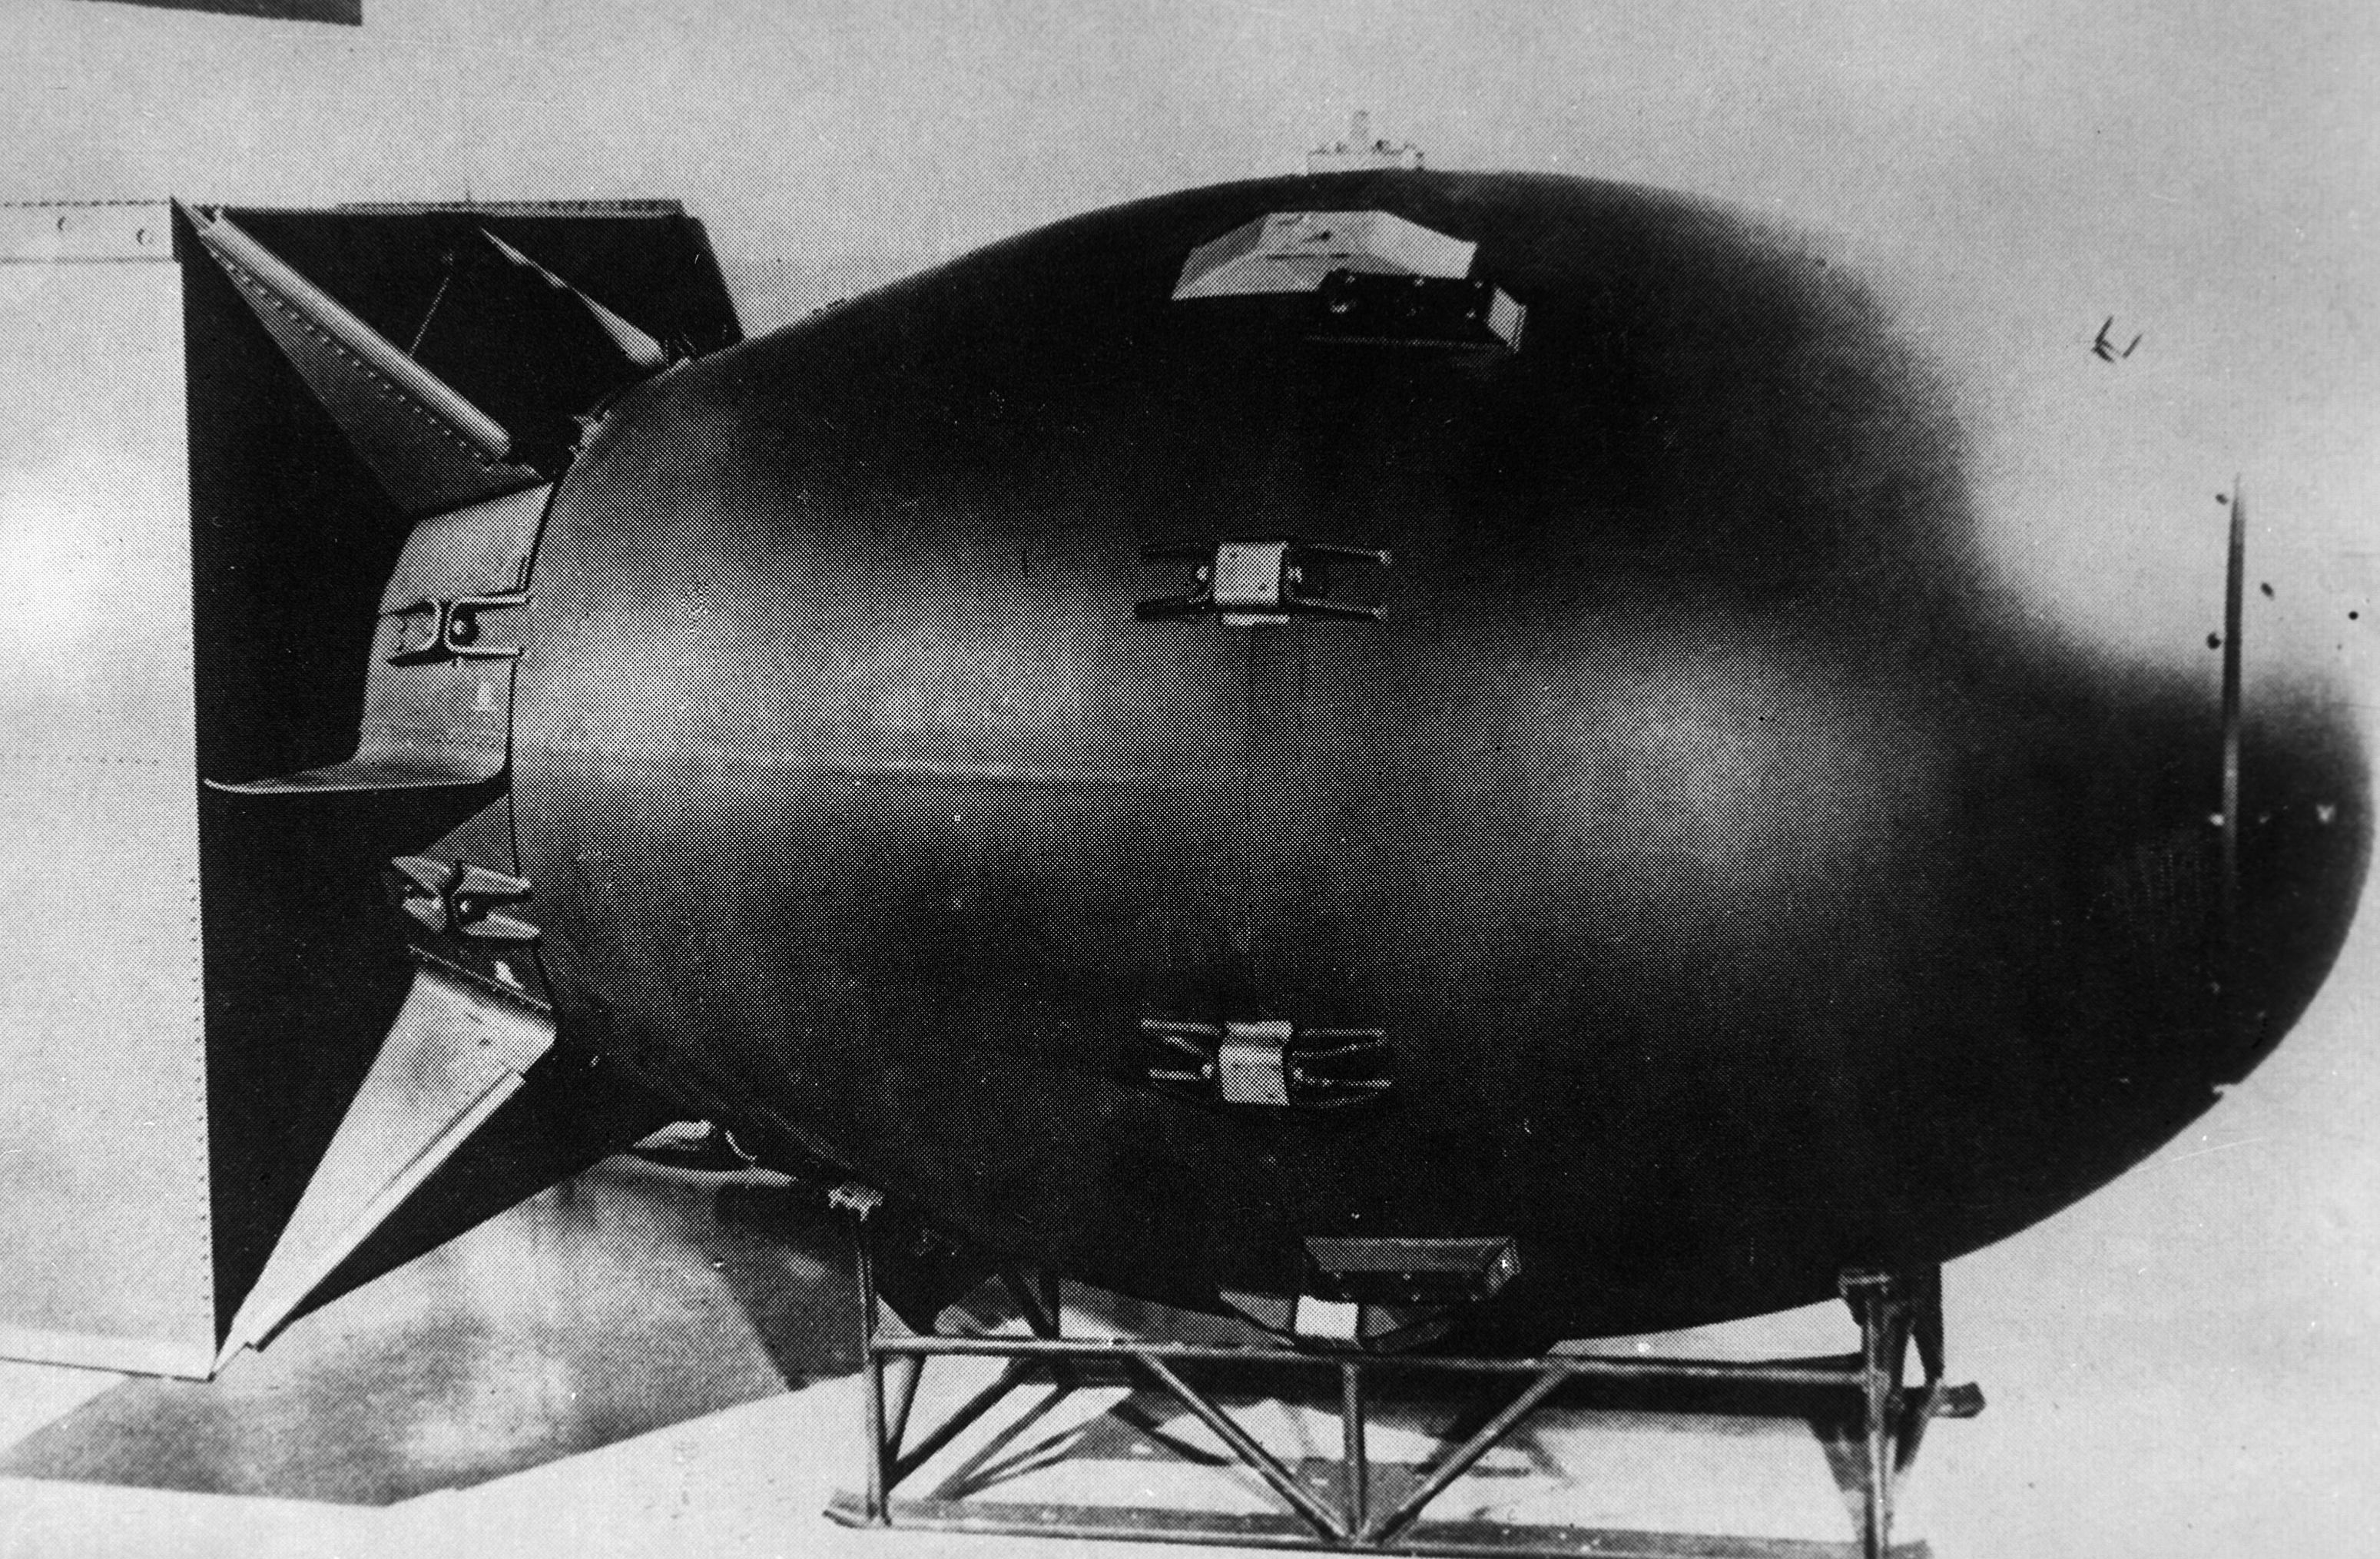 Атомная бомба "Толстяк", эквивалентом 21 килотонна тротила, была сброшена на город Нагасаки пилотом Чарльзом Суини, командиром бомбардировщика B-29 "Bockscar" 9 августа 1945 года на японский город Нагасаки